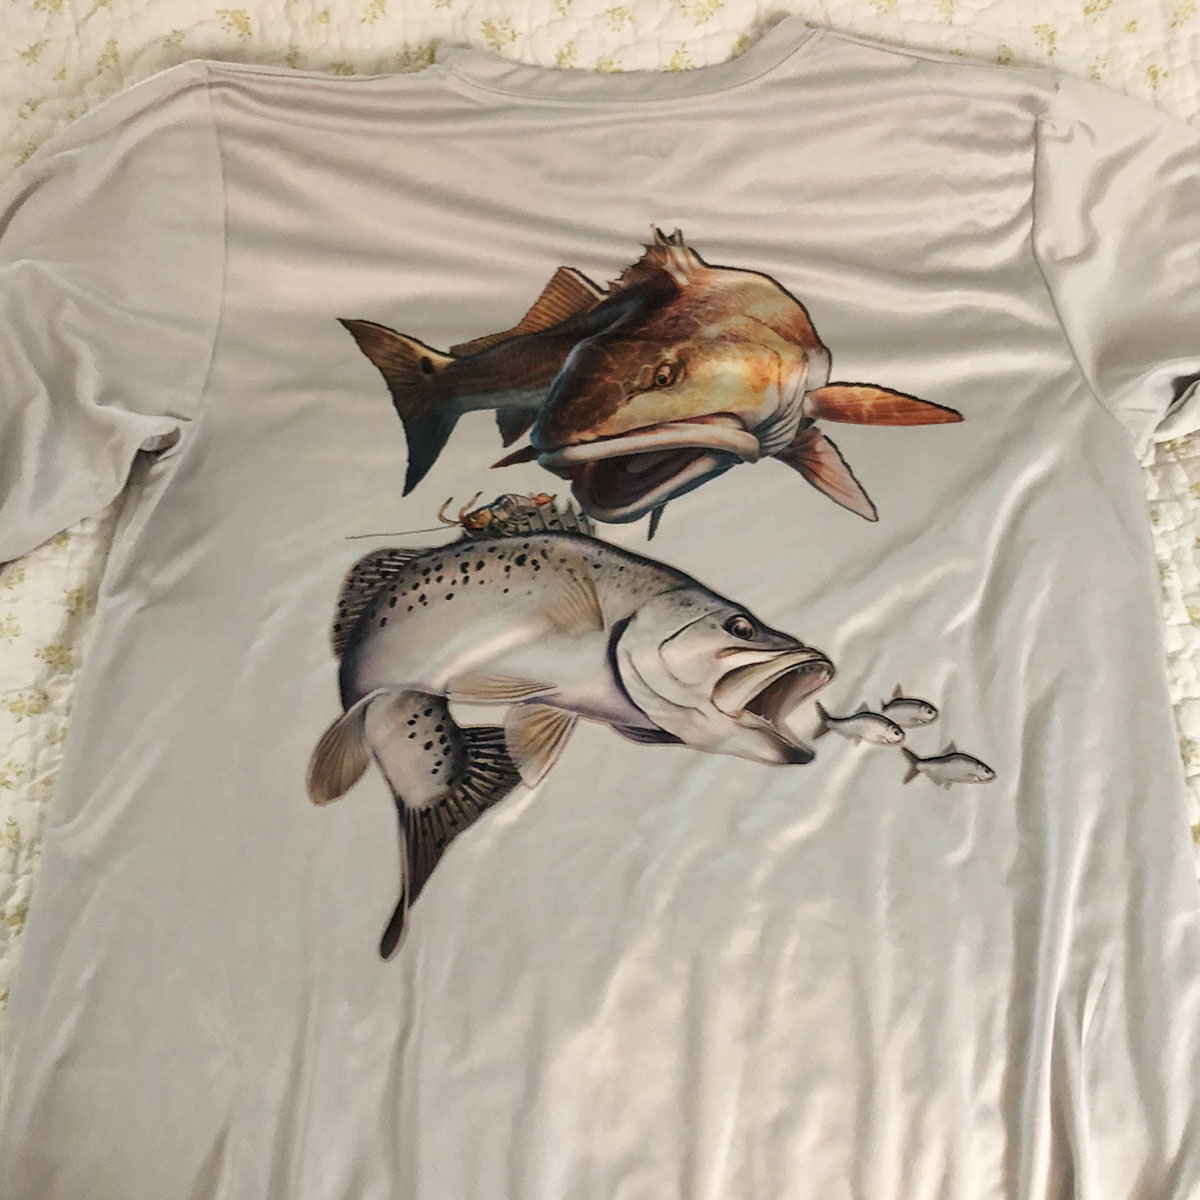 Redfish Angler Fishing T-shirt